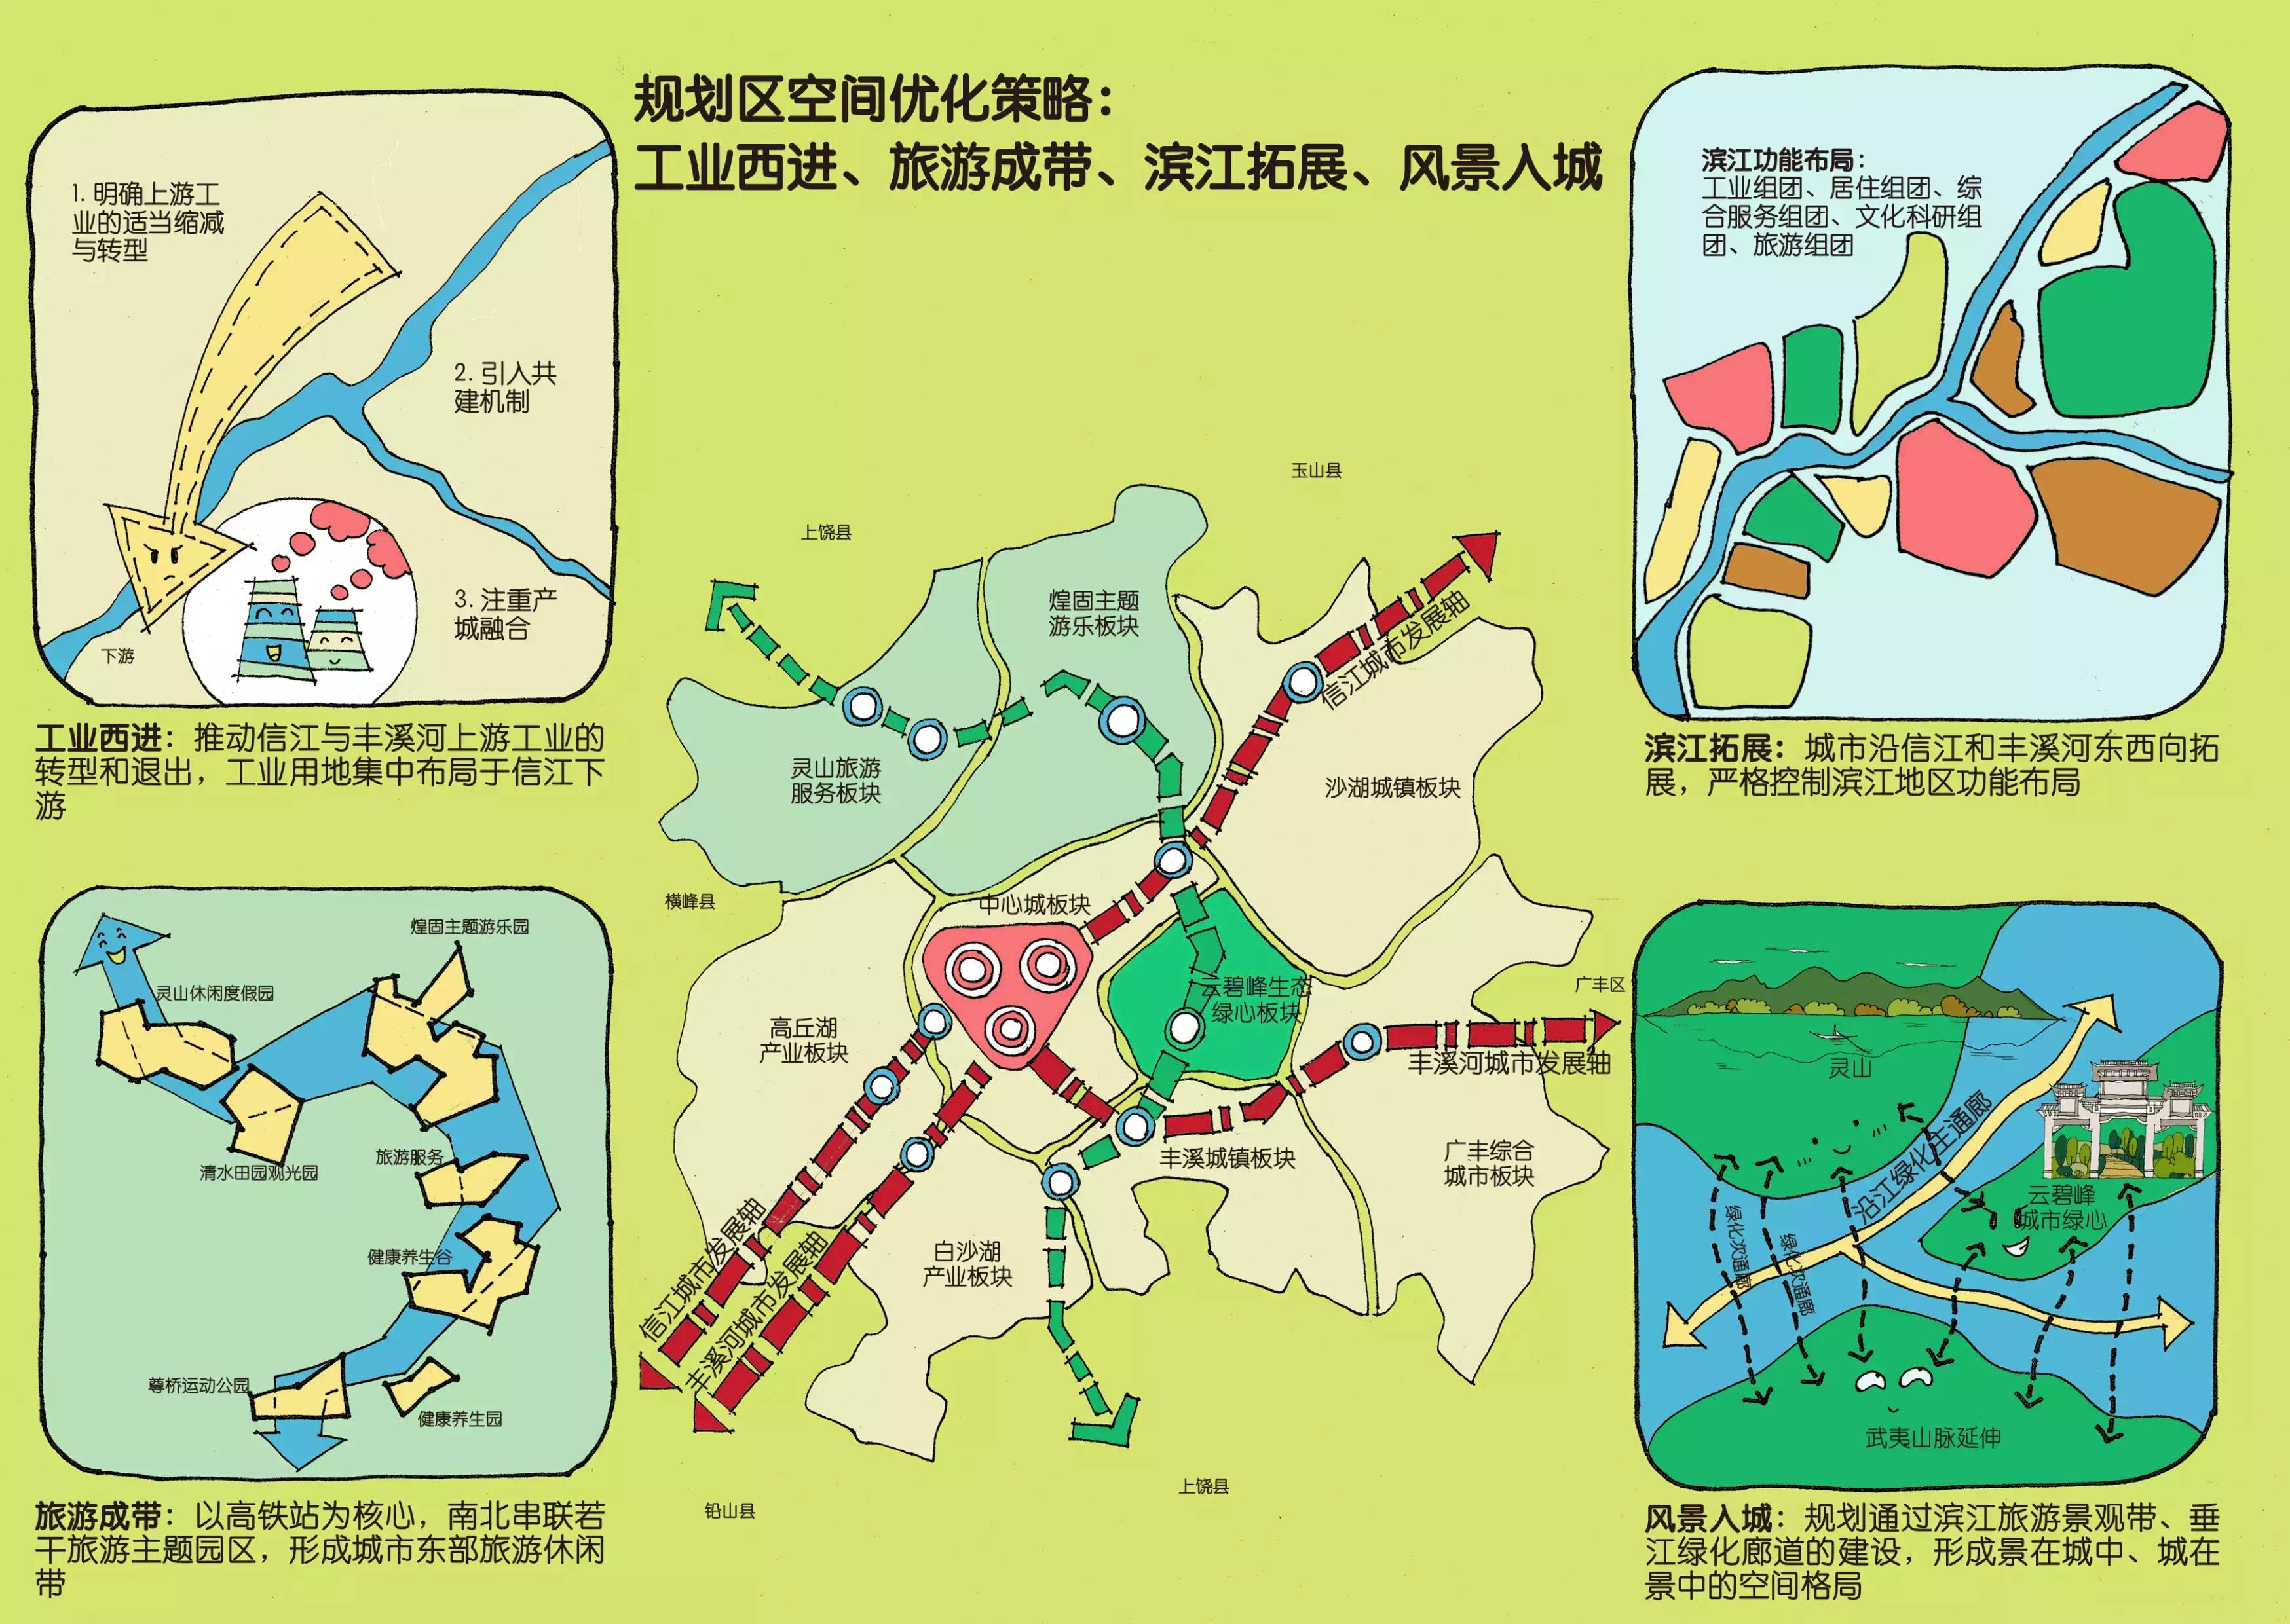 正文  旅游成带:以高铁站为核心,南北串联若干旅游题园区,形成城市